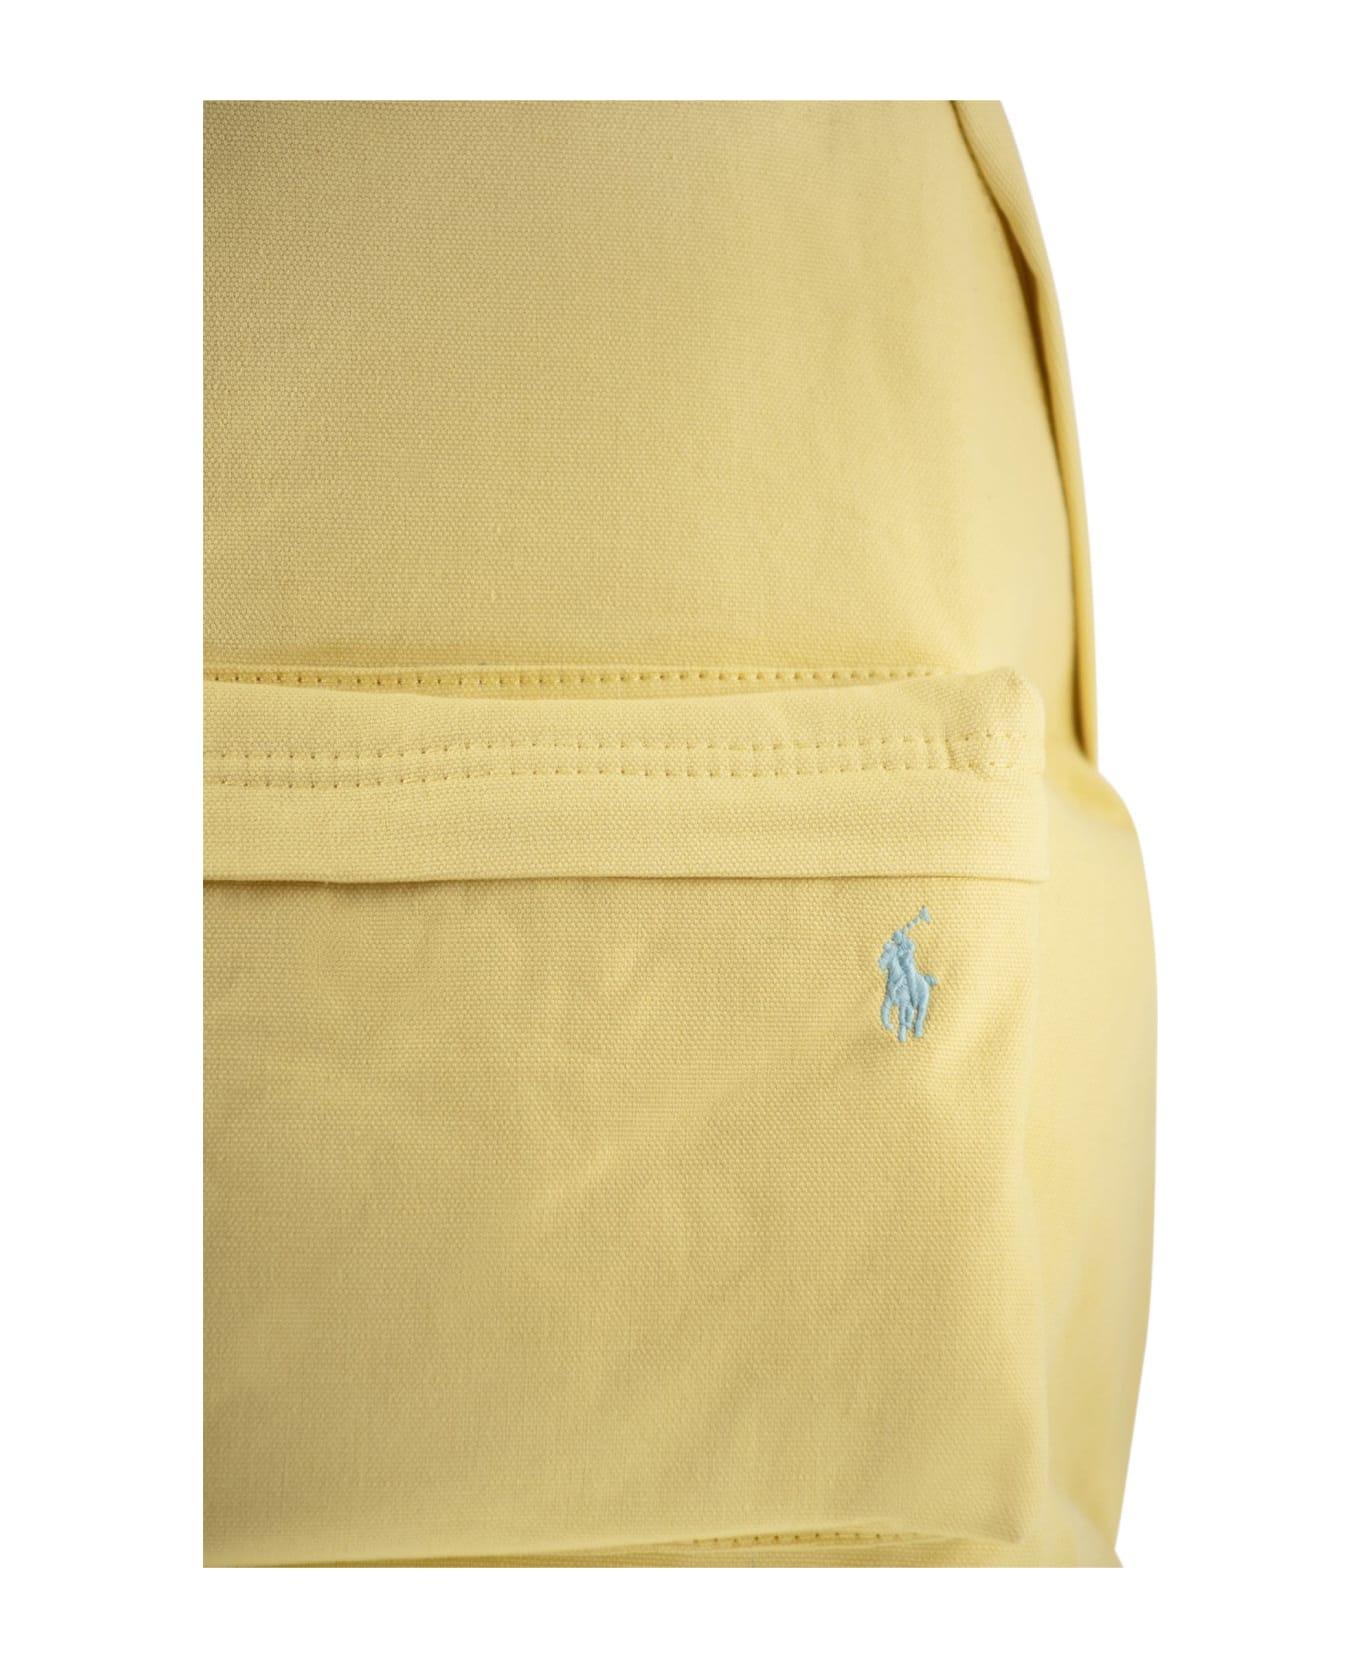 Polo Ralph Lauren Zaino Uomo Backpack - Yellow